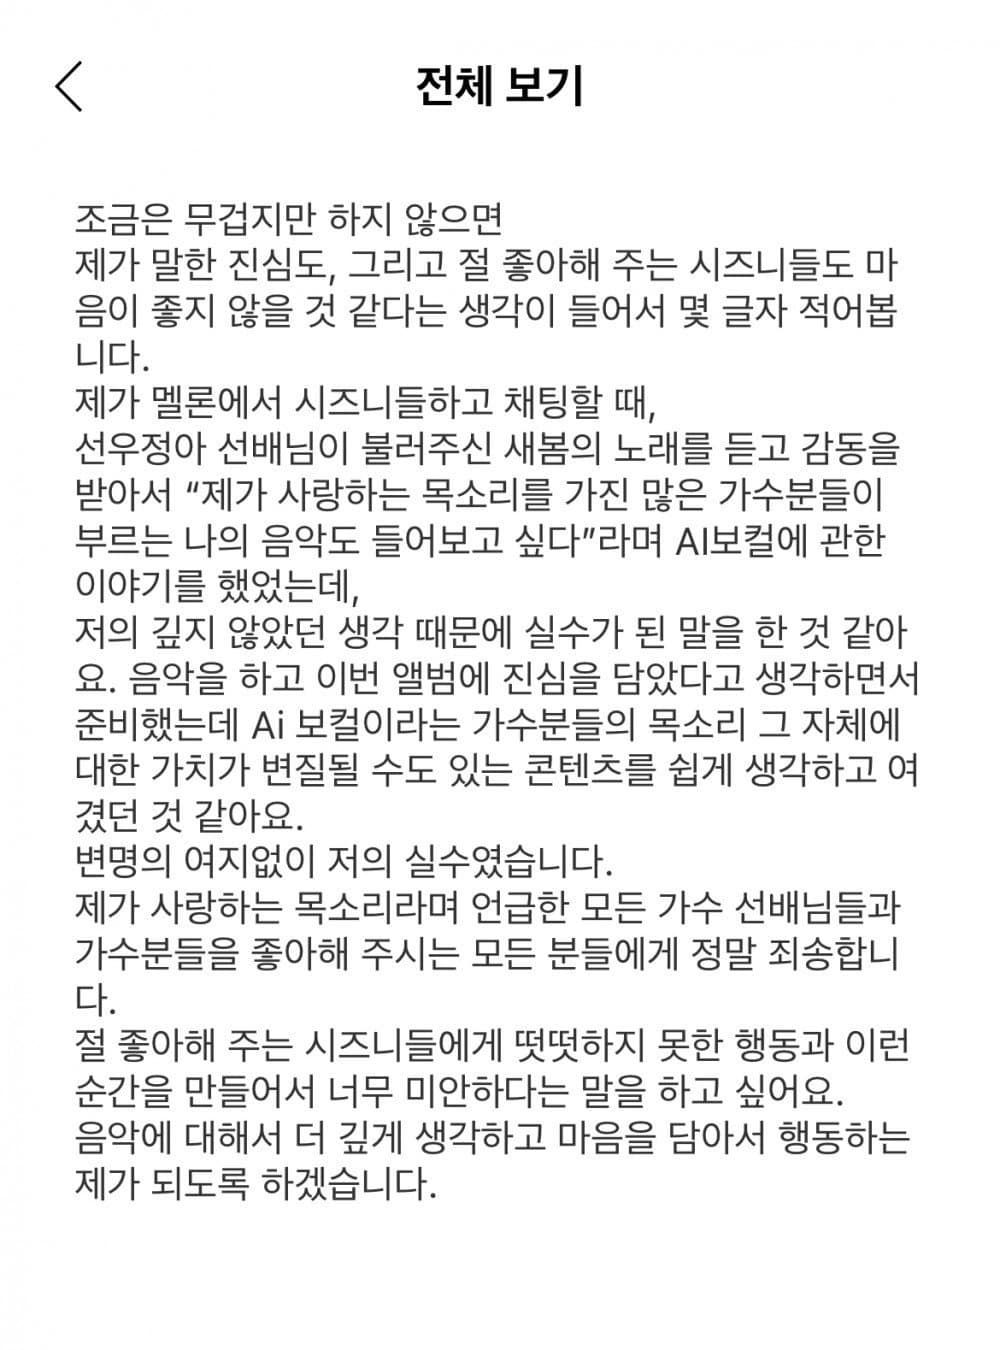 Доён из NCT извинился за высказывание об ИИ-каверах